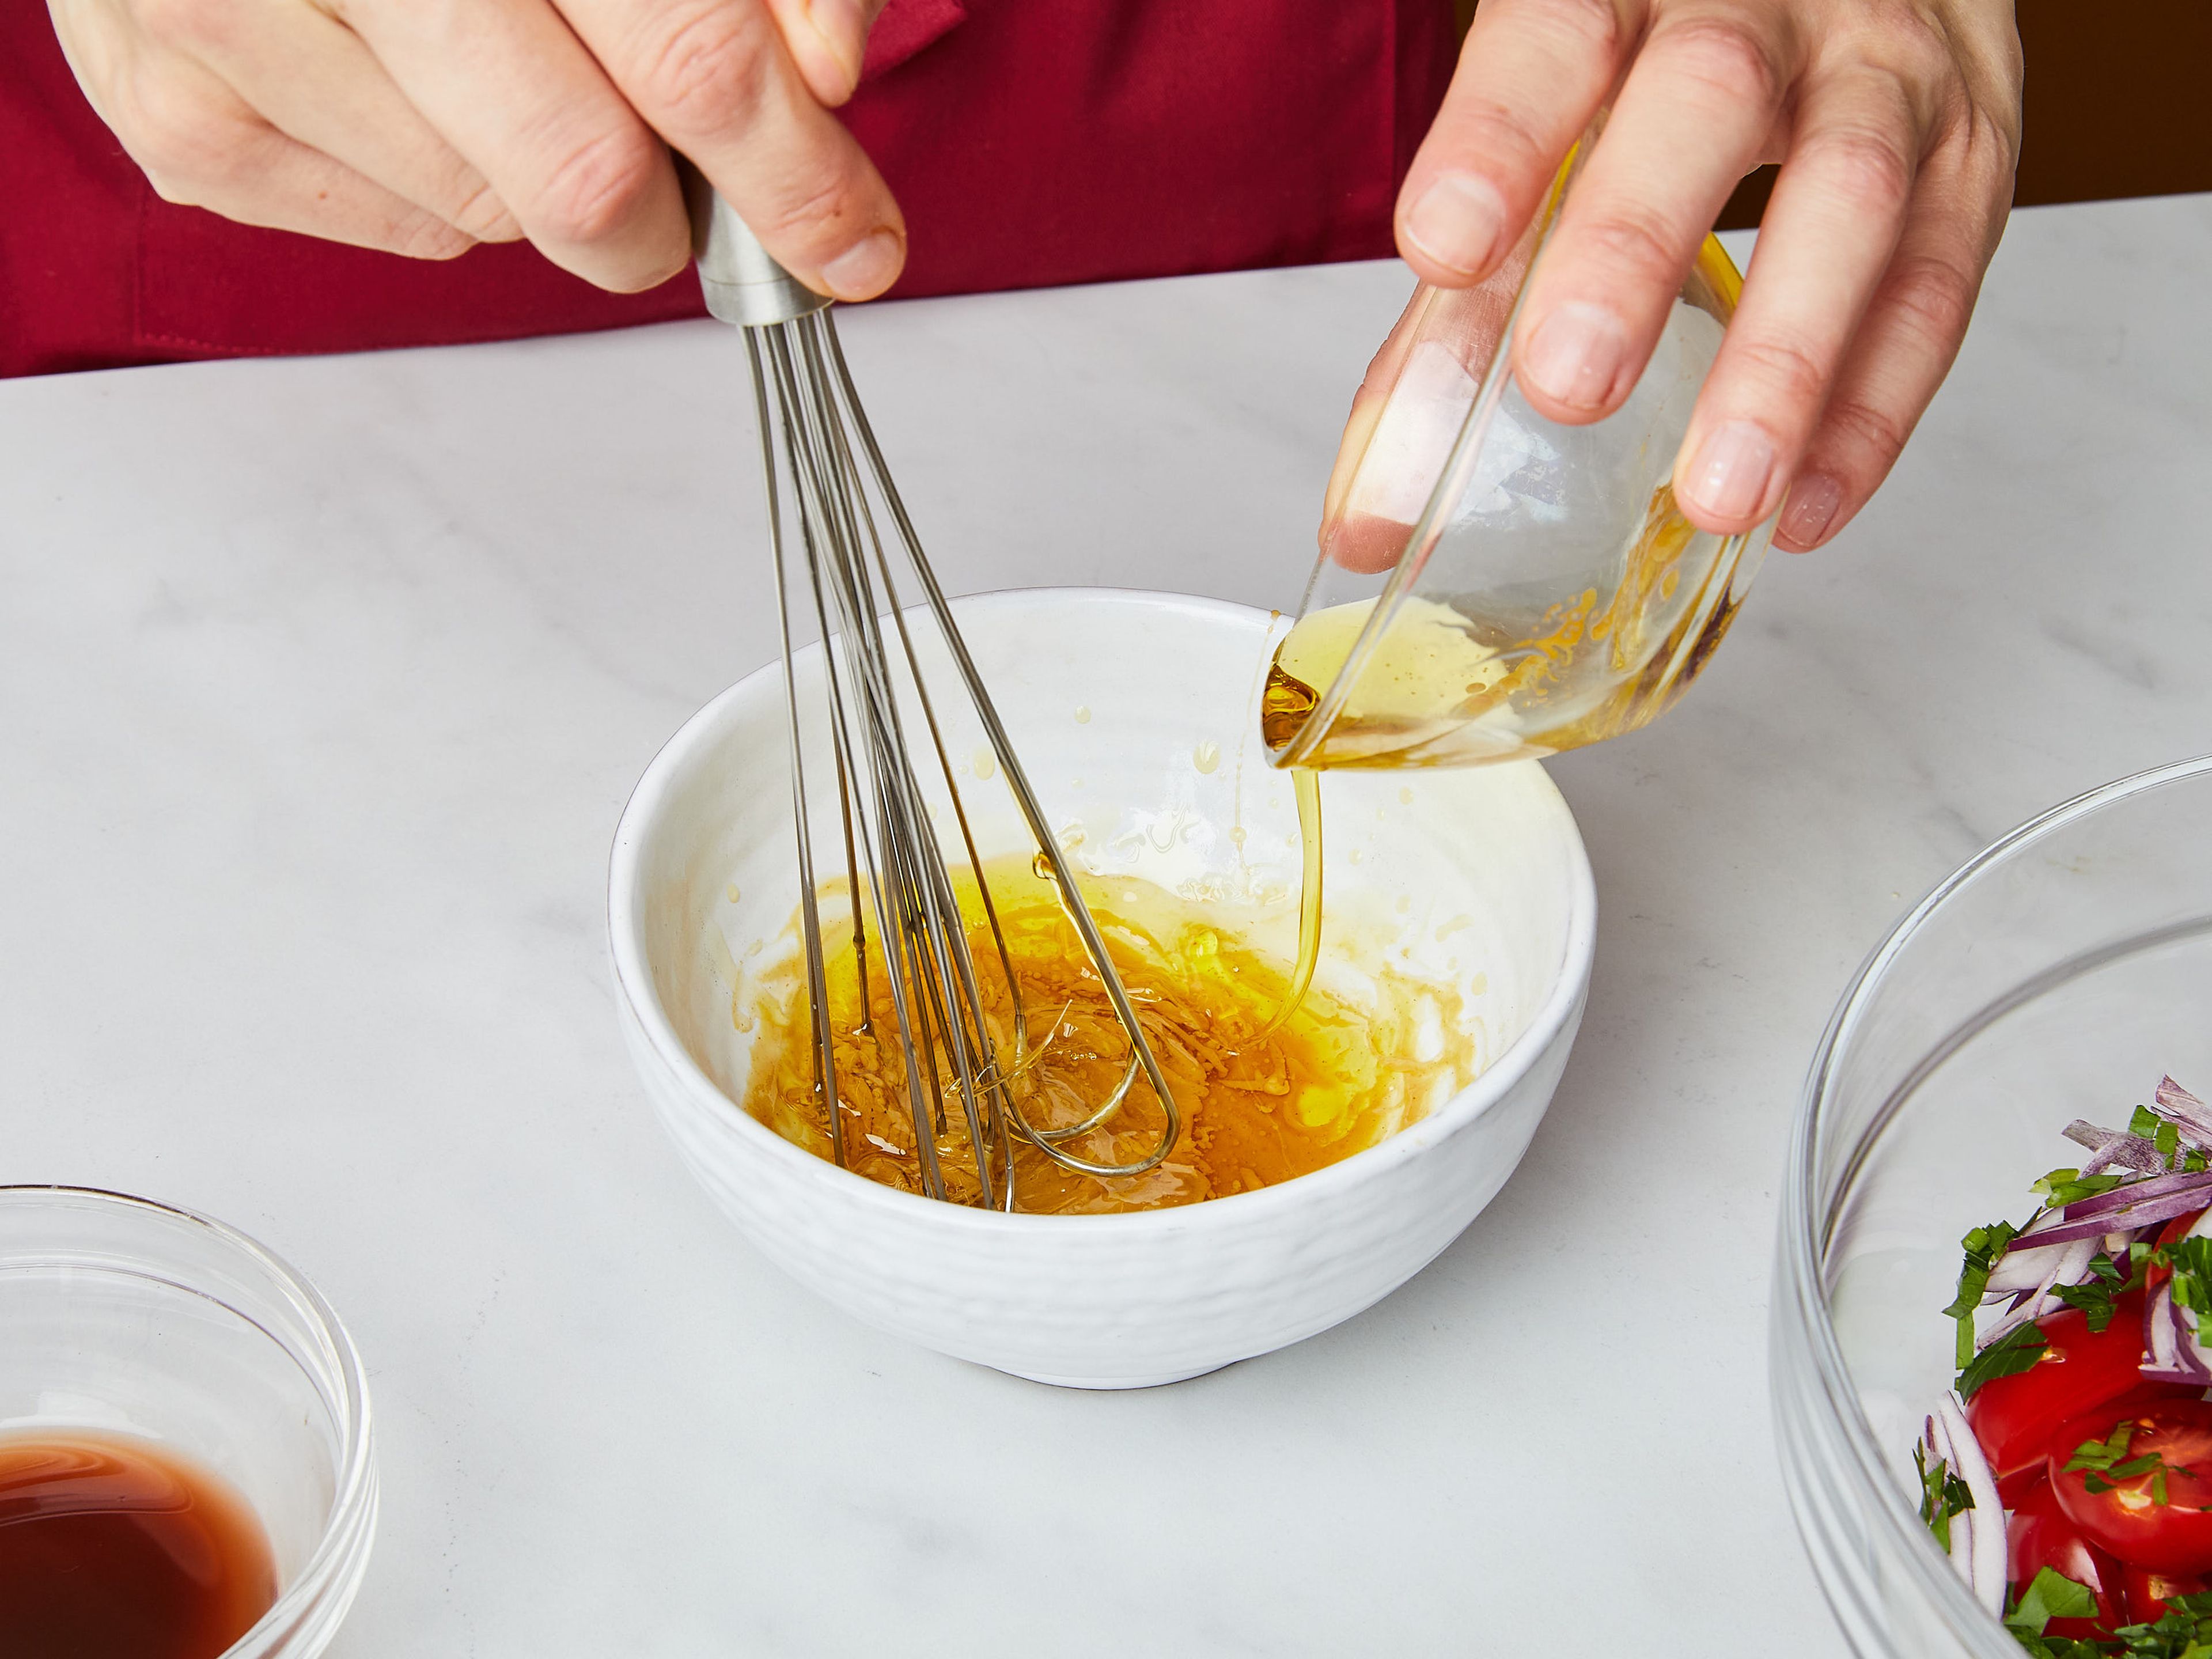 Den Salat in Blätter zerteilen und auf eine große Servierplatte legen. Kirschtomaten halbieren und in eine große Schüssel geben. Petersilie grob hacken und in die Schüssel geben. Die rote Zwiebel in feine Scheiben schneiden und ebenfalls in die Schüssel geben. Für das Dressing, Senf und Honig in eine kleine Schüssel geben. Langsam die Hälfte des Olivenöls einrühren, um es zu emulgieren, dann den Essig einrühren. Grob gemahlenen Pfeffer hinzufügen und mit Salz abschmecken. Beiseite stellen.